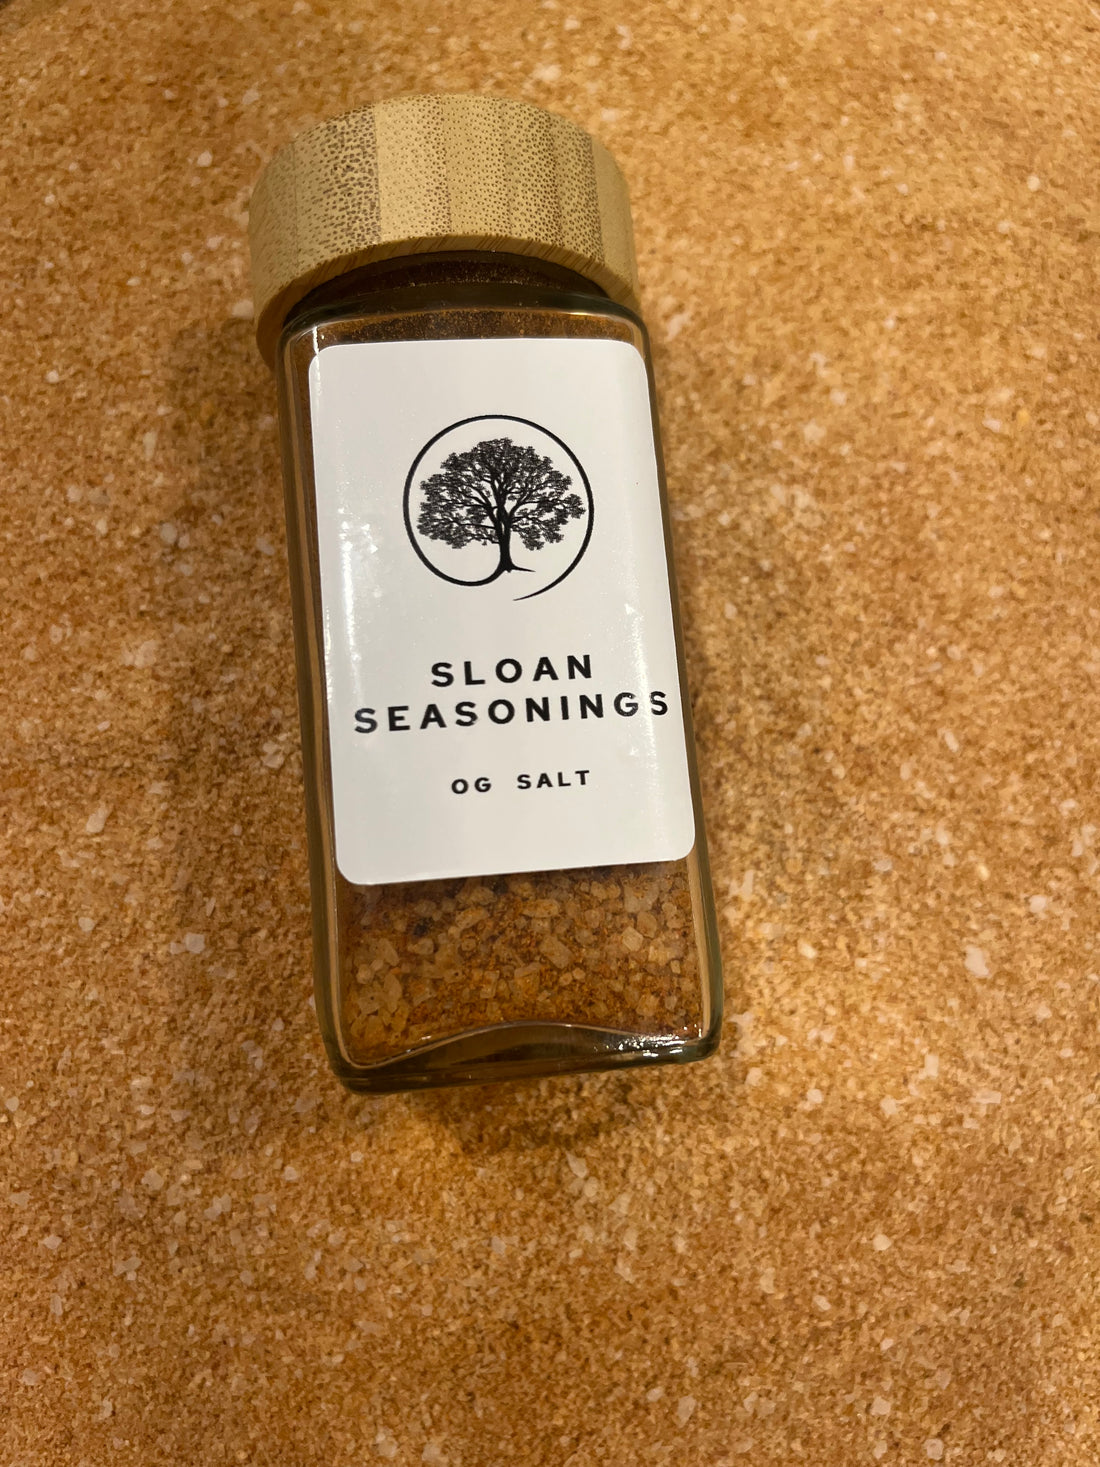 Sloan Seasonings Salt Jar with Bamboo Lid